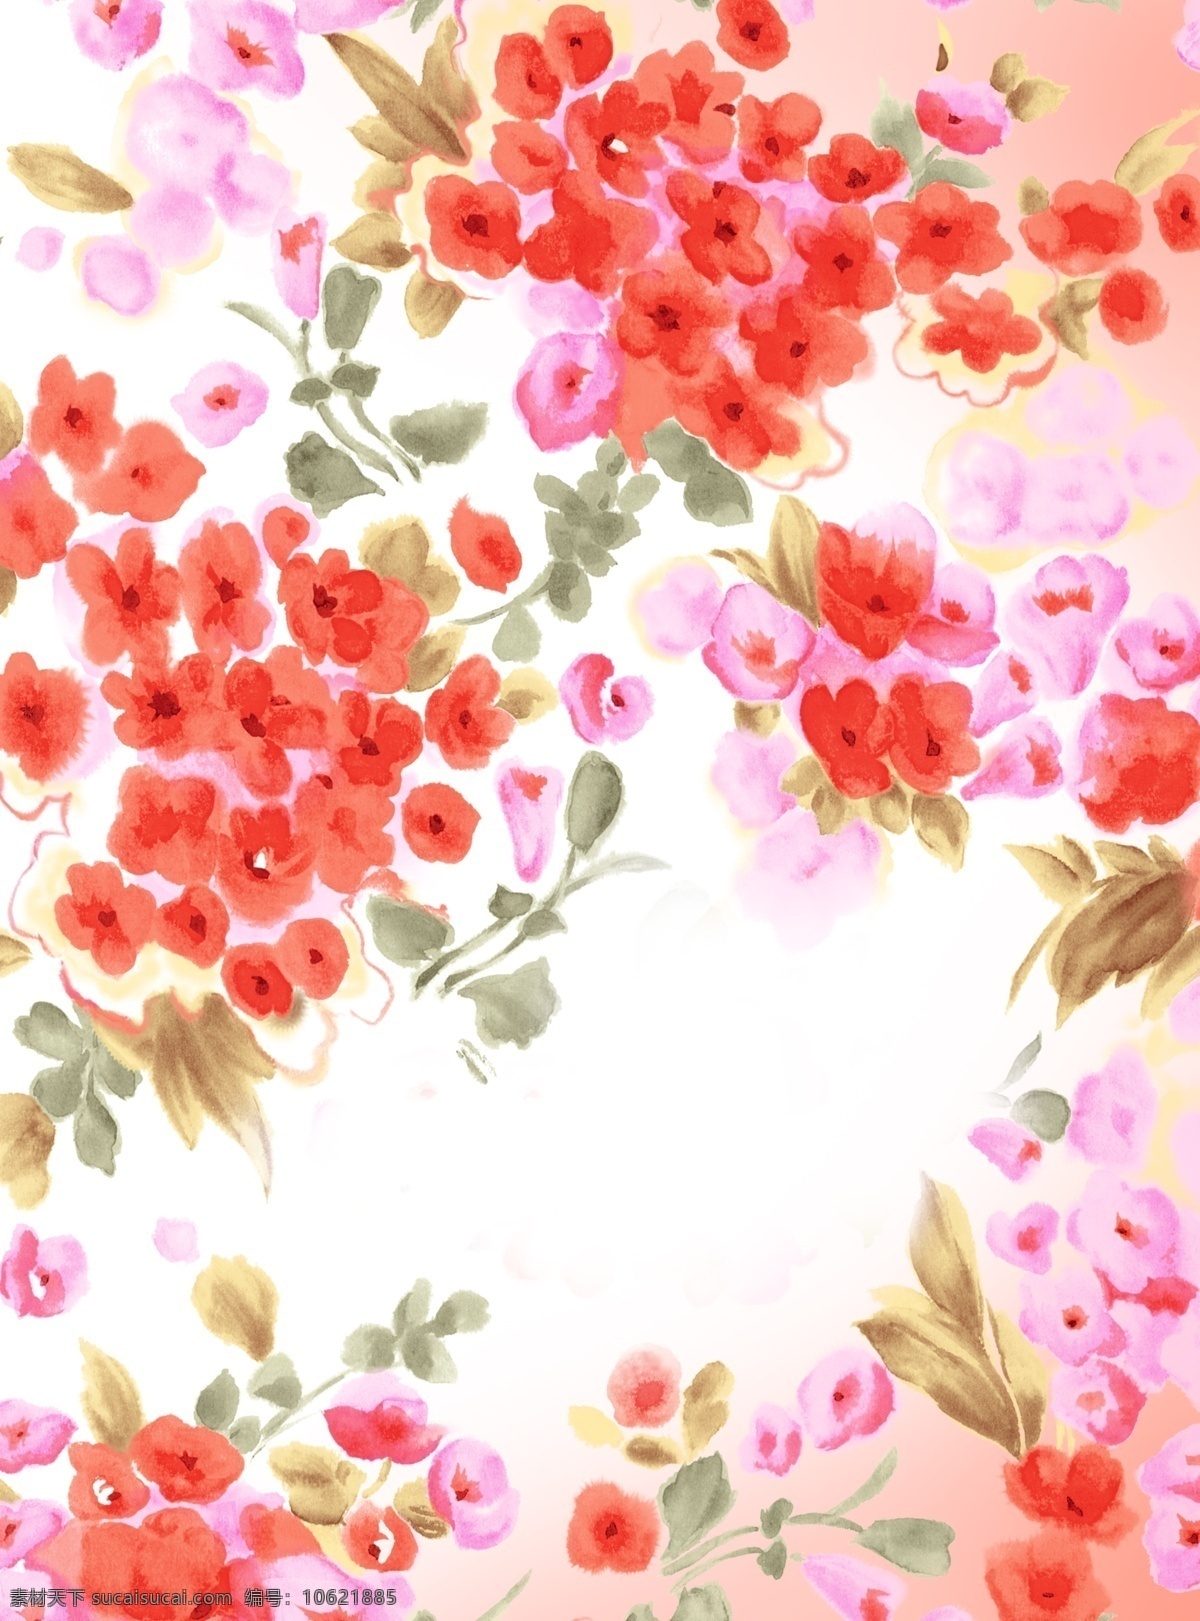 浪漫花卉背景 浪漫 花卉 背景 粉红 爱情 情人节 版式设计 平铺图案 分层 白色